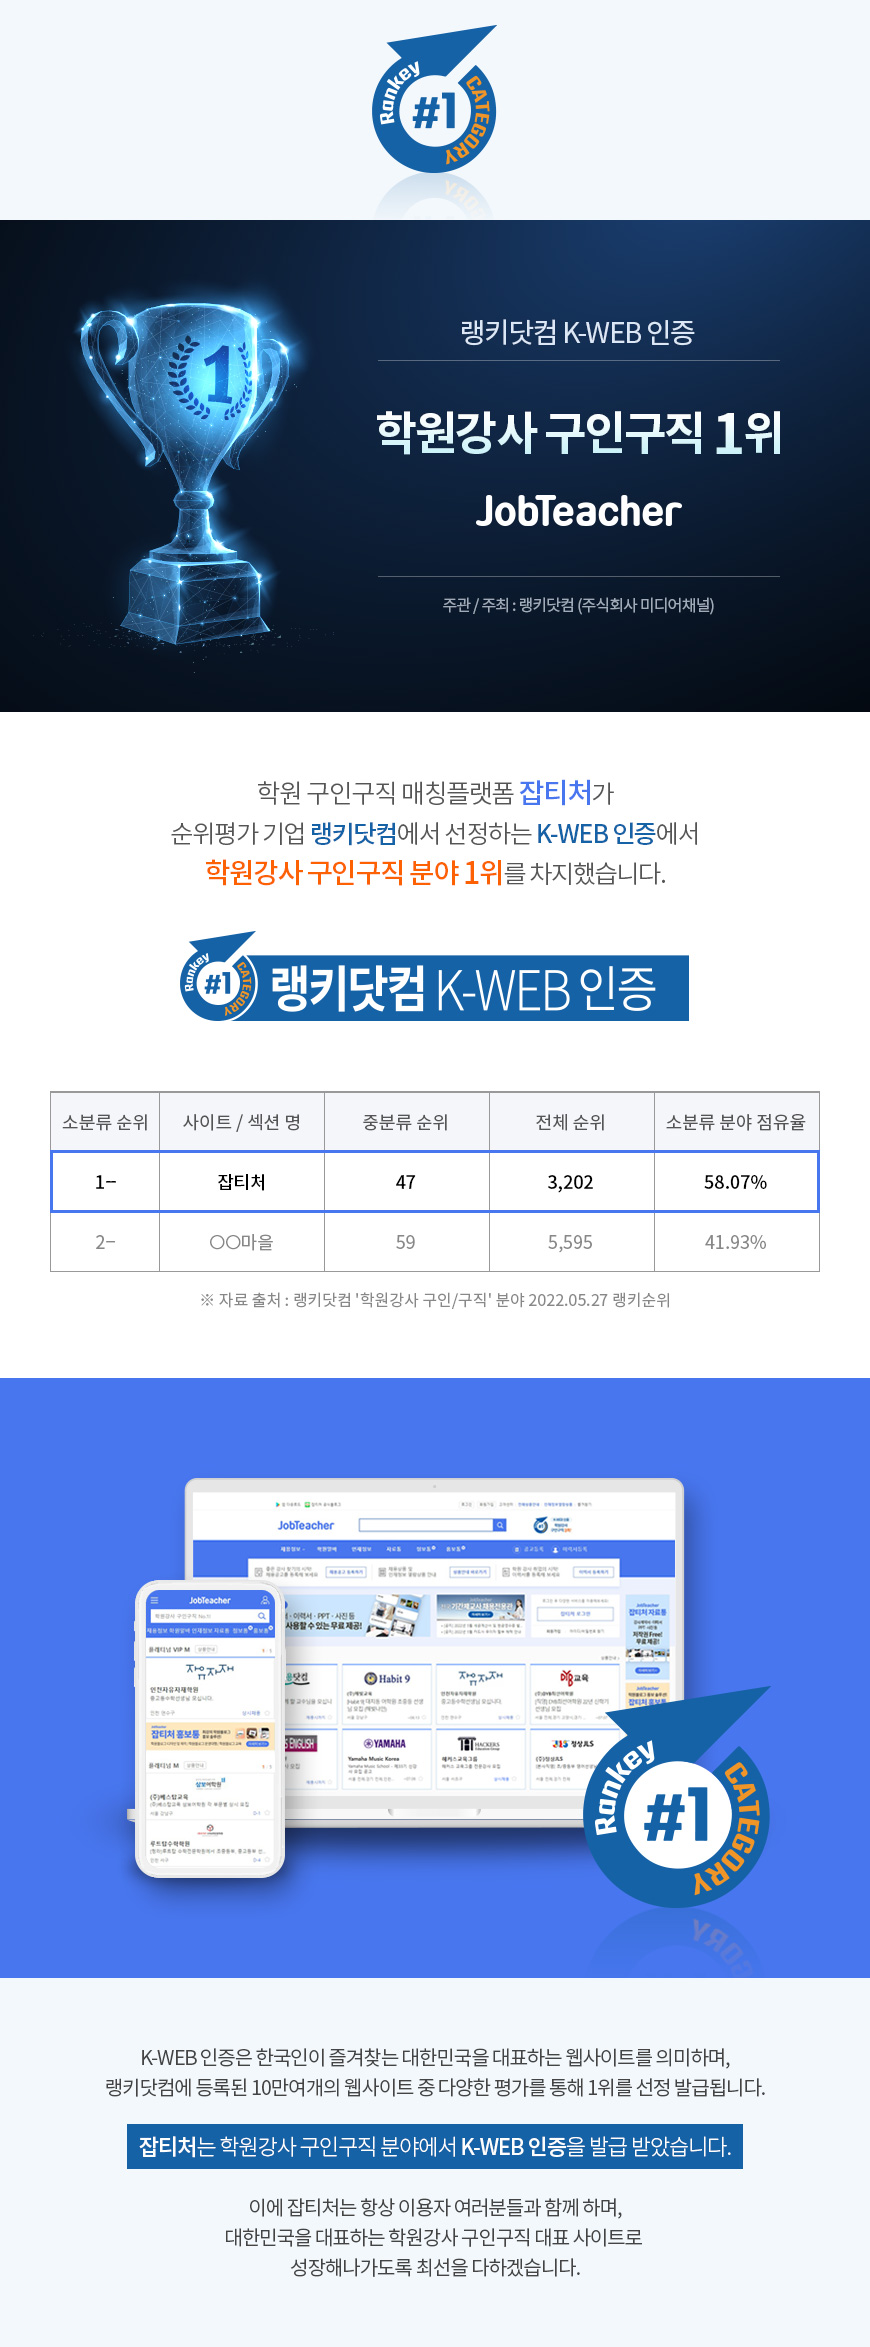 랭키닷컴 K-WEB 인증 학원강사 구인구직 분야 1위 잡티처